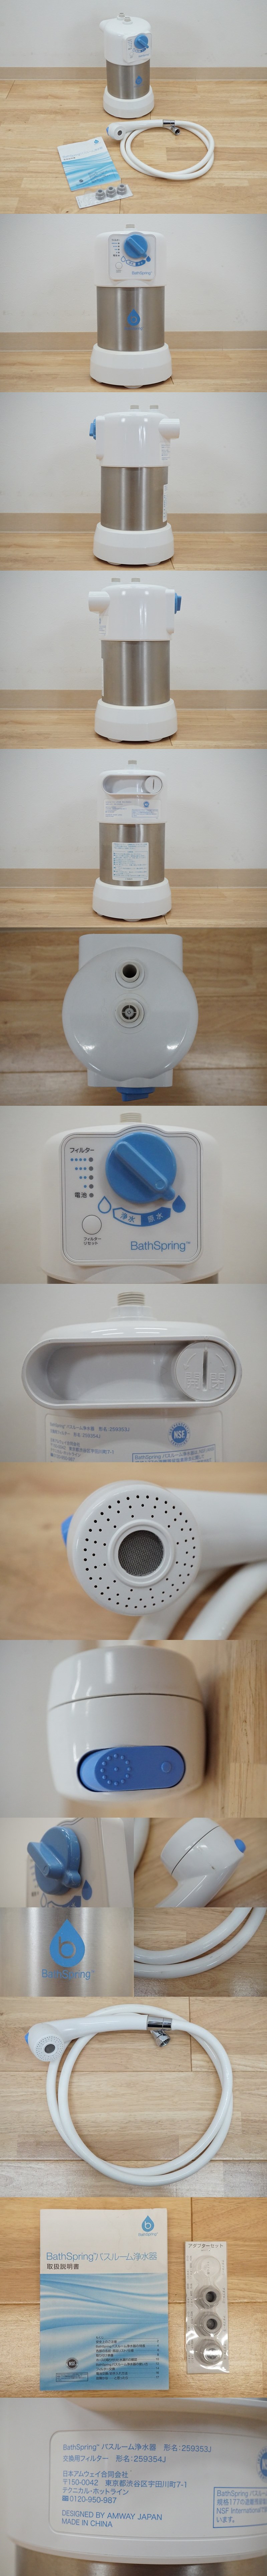 大幅値引前ダ:Bath Spring バスルーム 浄水器 259353J 据置型 バススプリング お風呂用浄水器 ★送料無料★ シャワー用浄水機